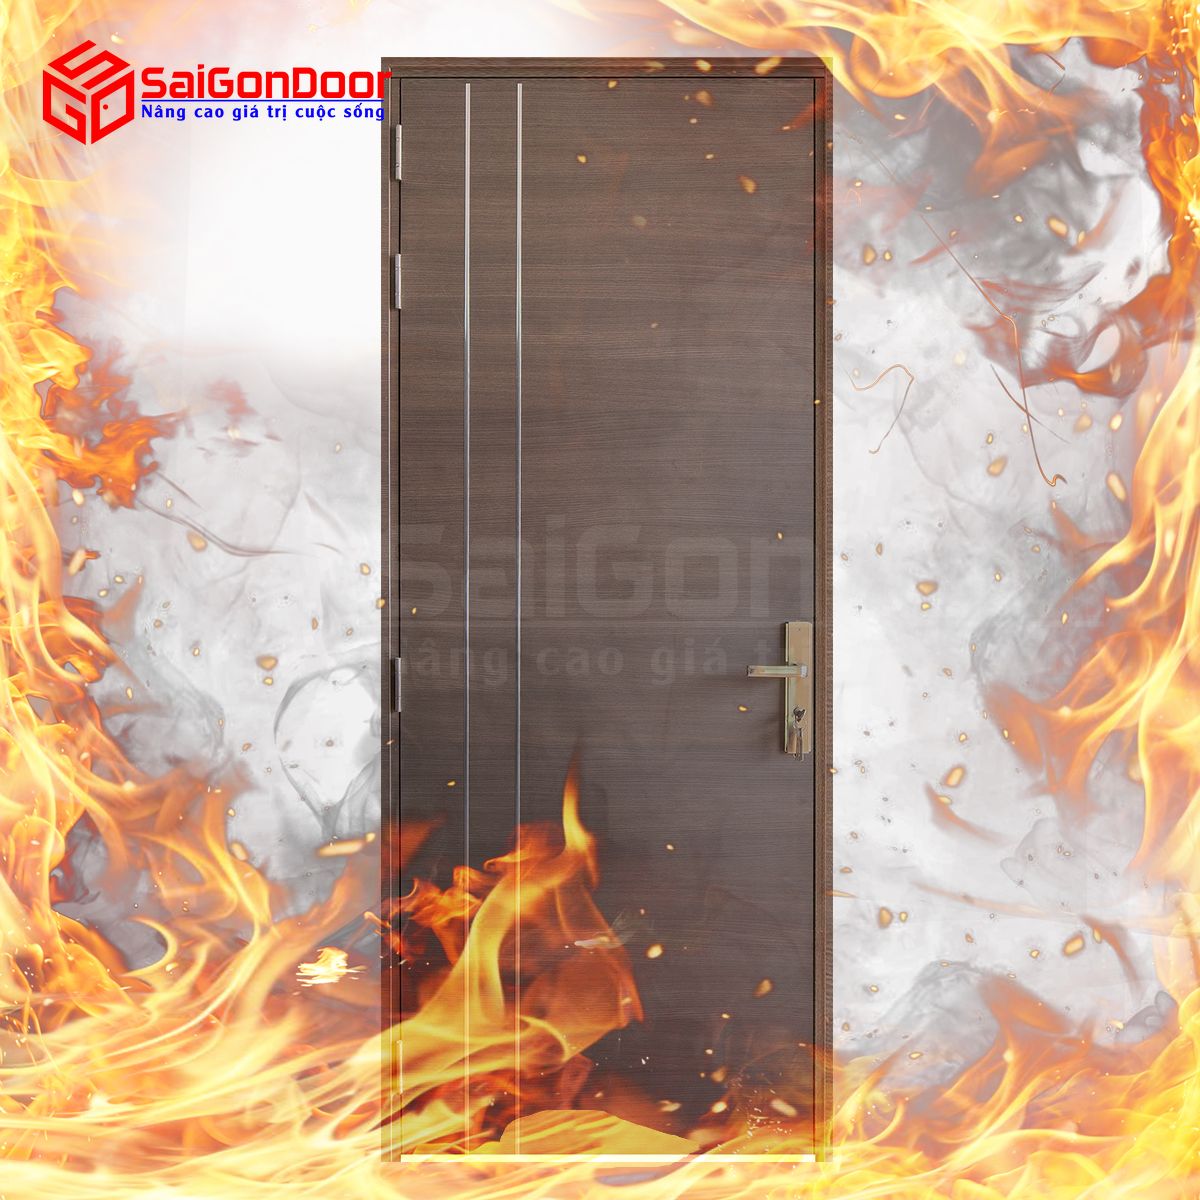 Cửa gỗ chống cháy thường được sử dụng làm cửa nhà ở với côgn dụng chống cháy tốt